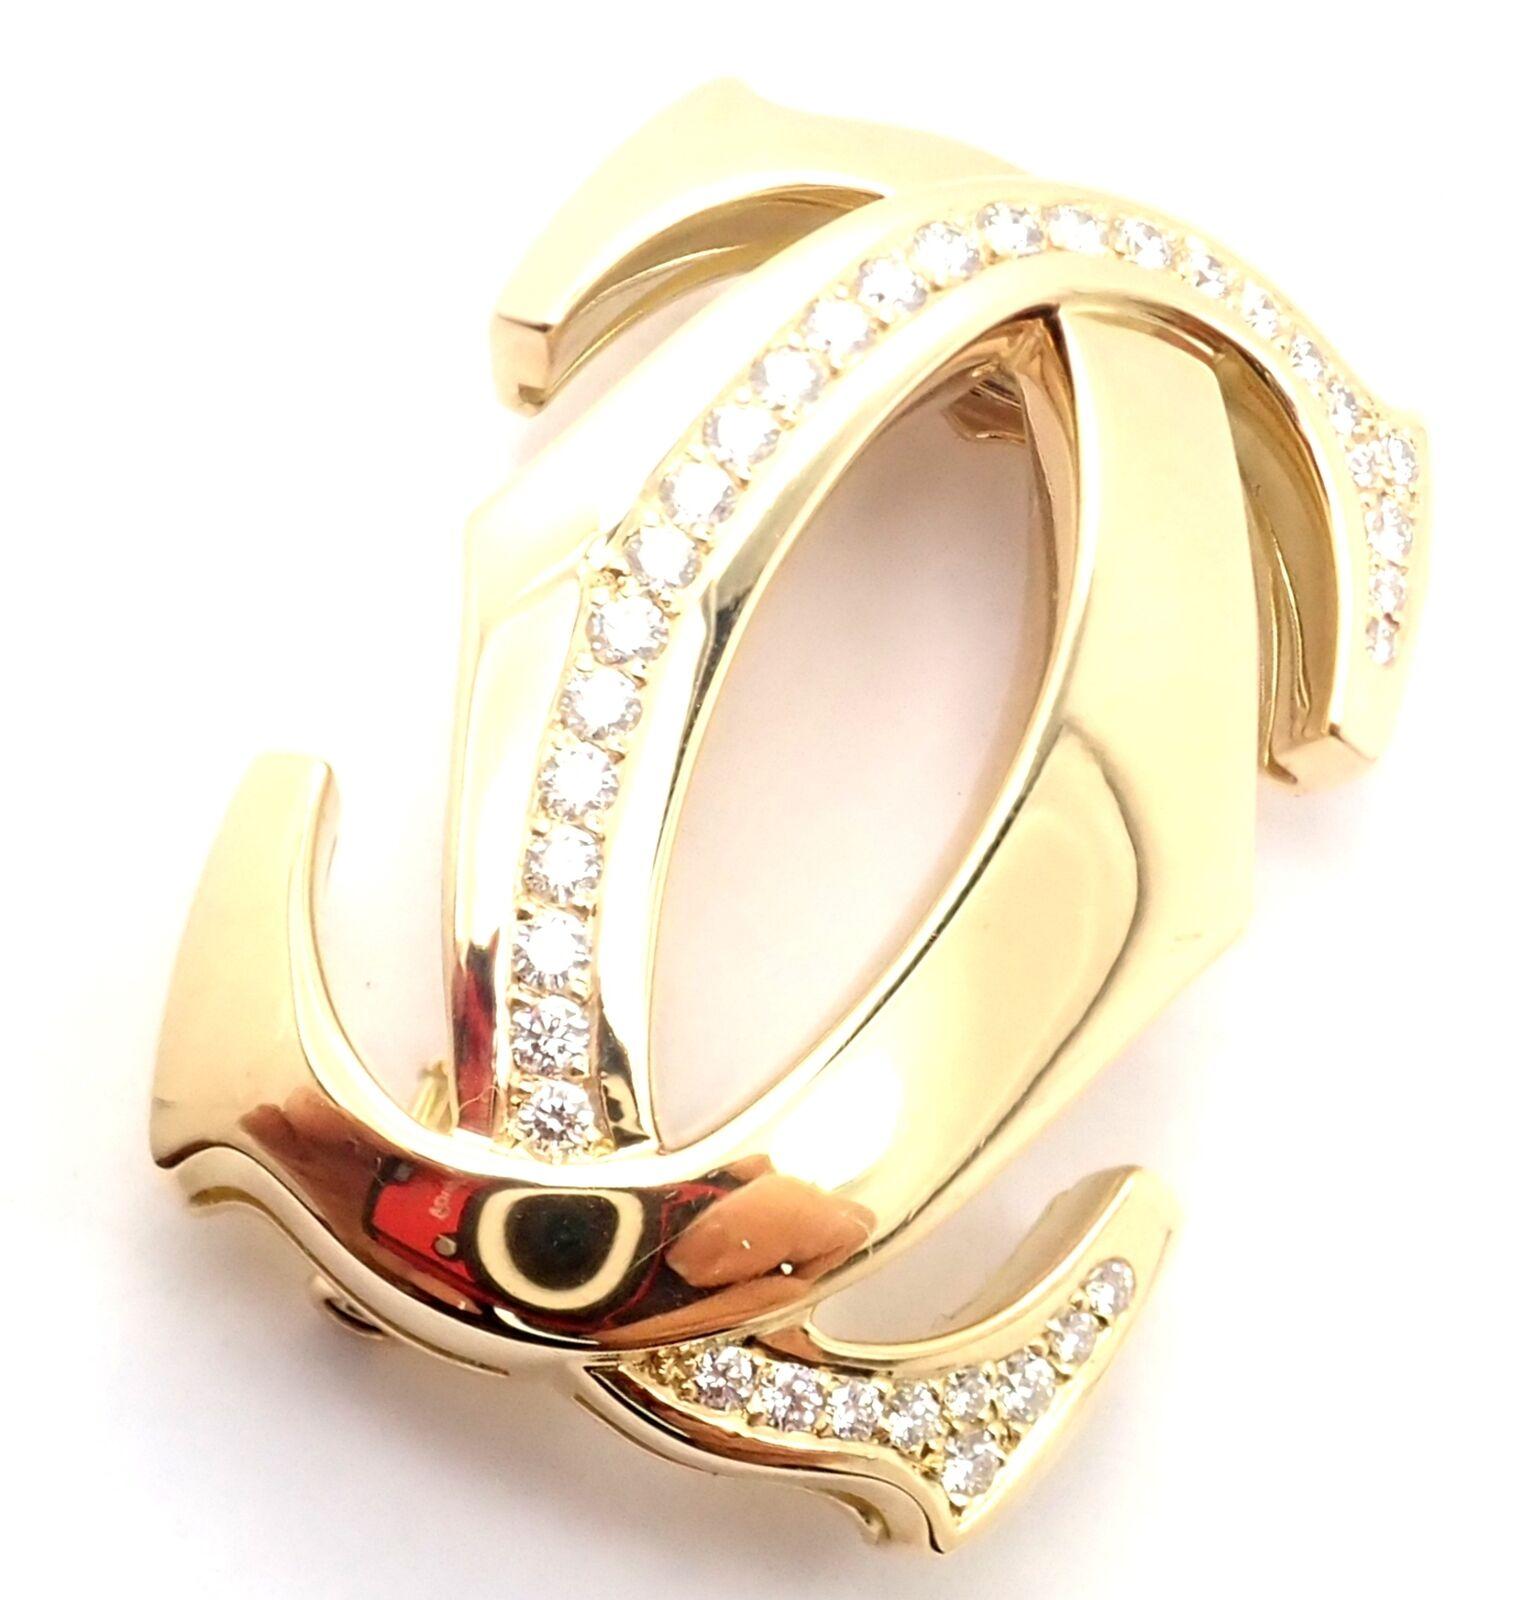 18k Gelbgold Diamant Penelope Double C Large Pin Brosche von Cartier. 
Mit 35 runden Diamanten im Brillantschliff VVS1 Reinheit, E Farbe Gesamtgewicht ca. 1ct
Einzelheiten: 
Gewicht: 20.7 Gramm
Abmessungen: 1.5